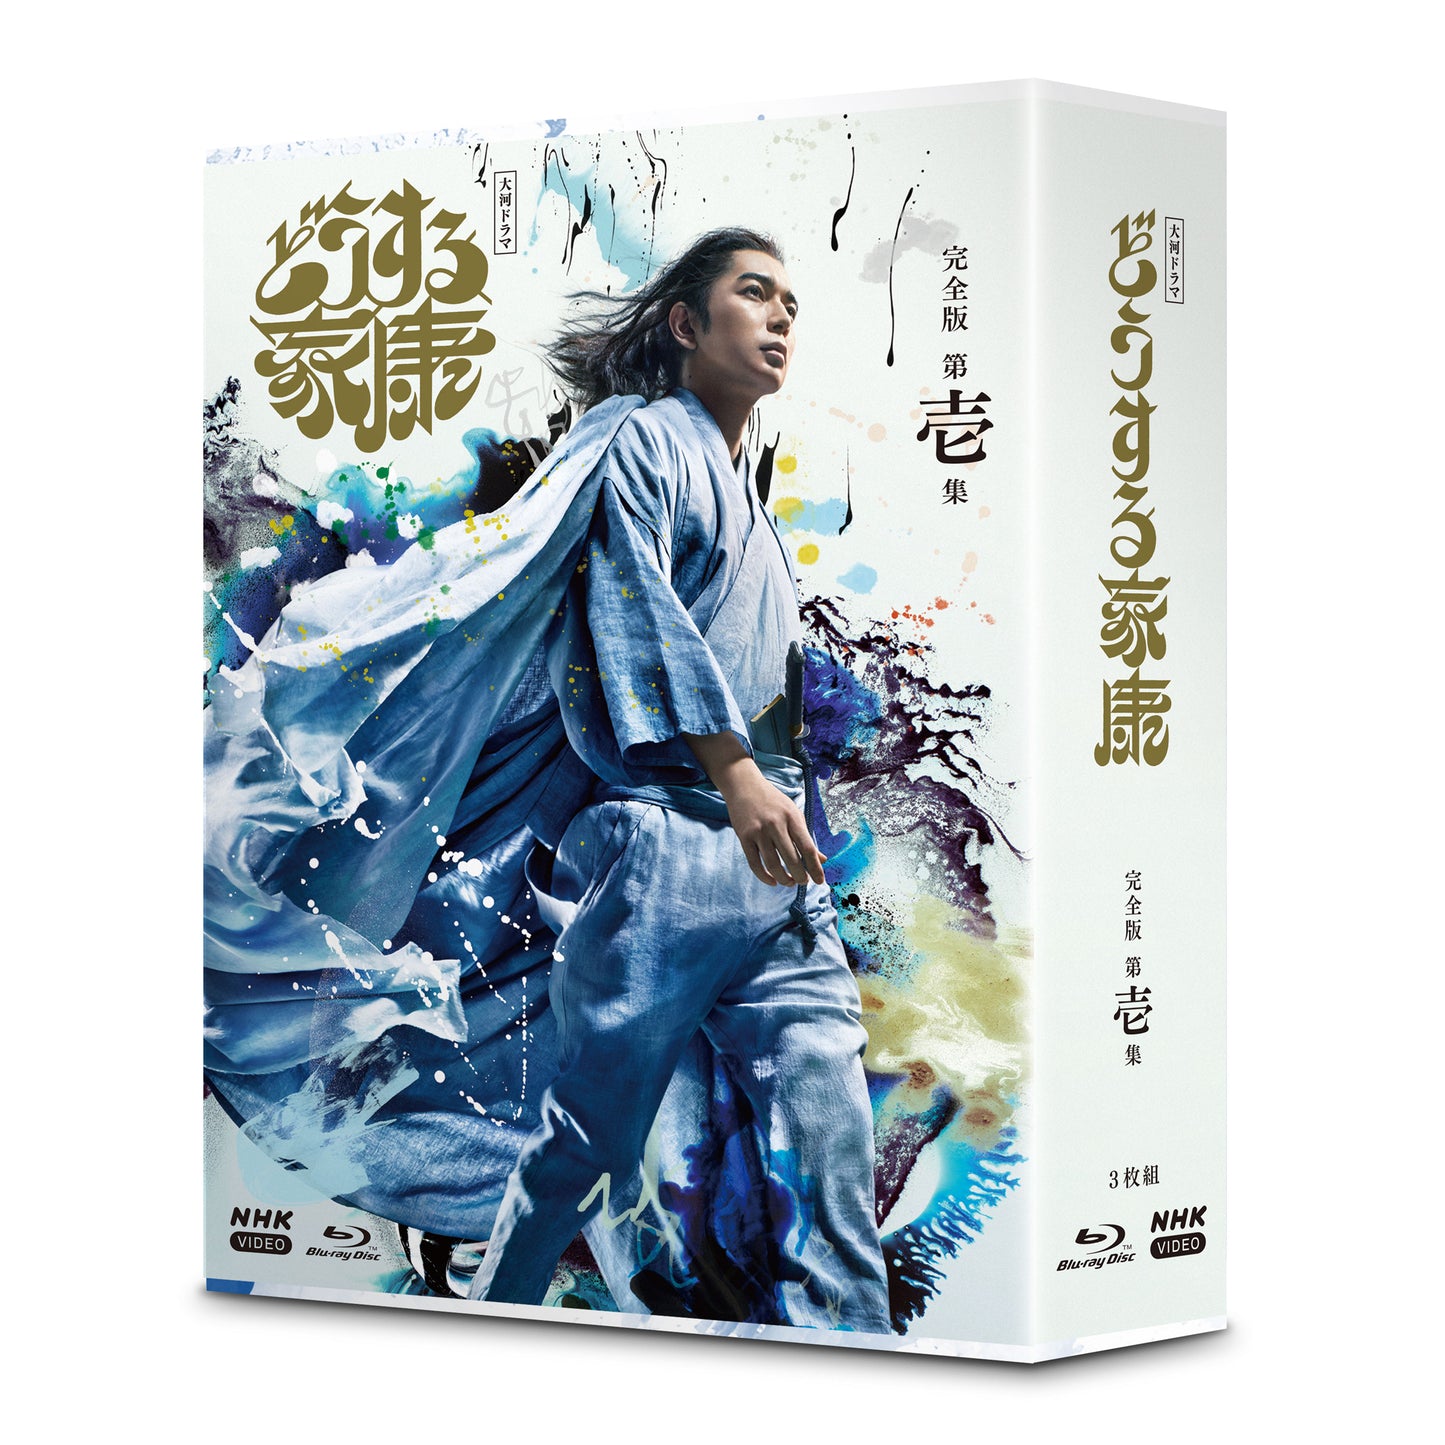 大河ドラマ どうする家康 完全版 第壱集 ブルーレイBOX 全3枚